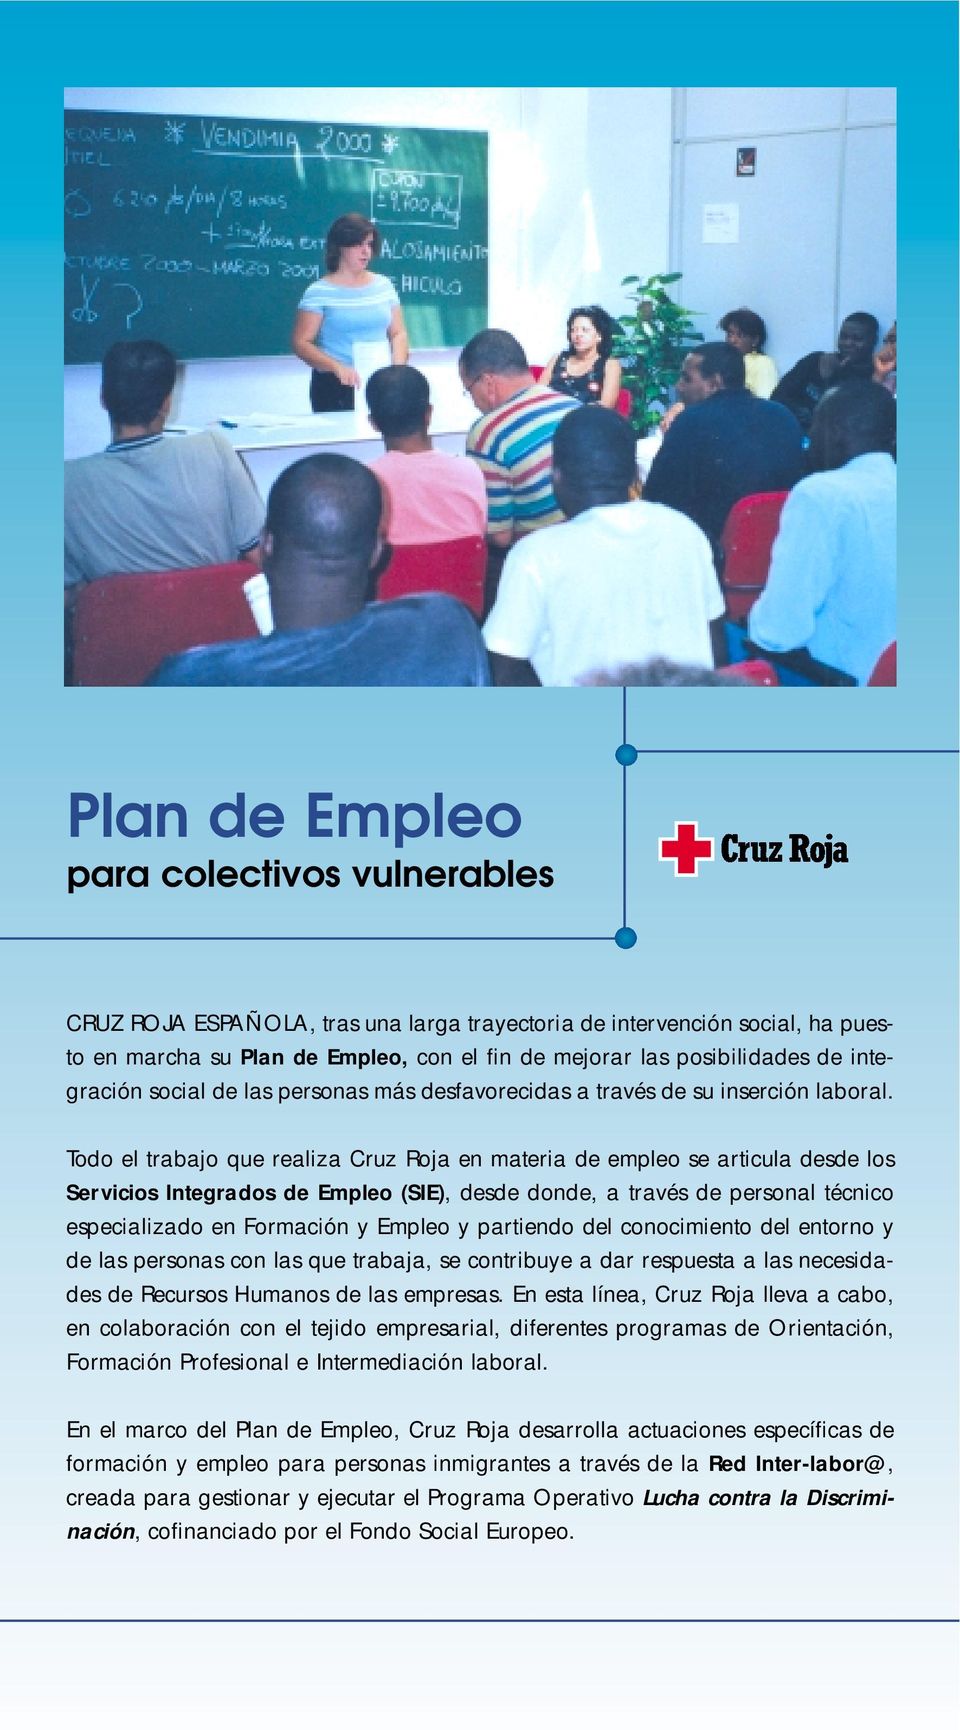 Todo el trabajo que realiza Cruz Roja en materia de empleo se articula desde los Servicios Integrados de Empleo (SIE), desde donde, a través de personal técnico especializado en Formación y Empleo y